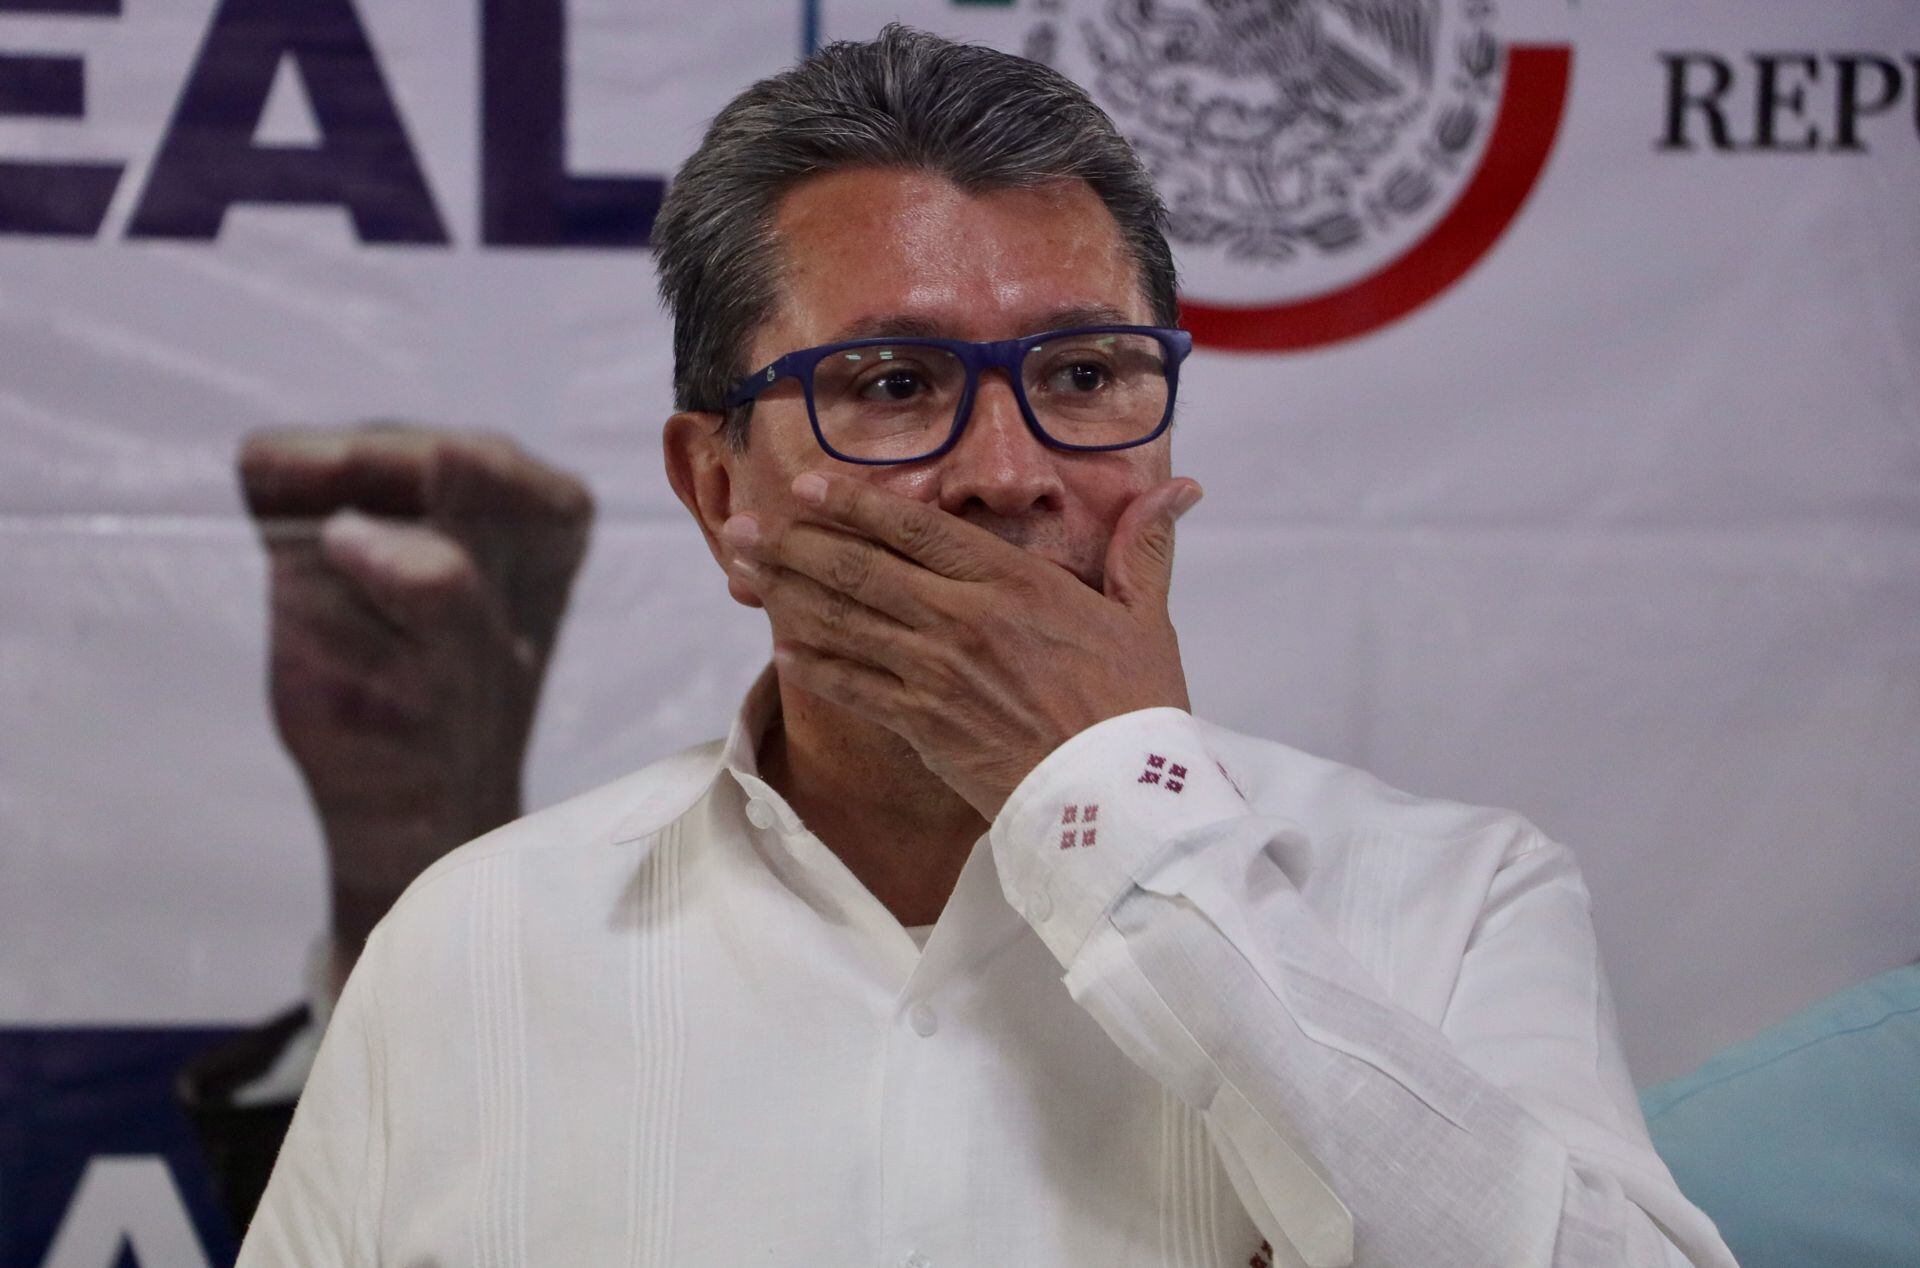 They kidnap a cousin of Senator Ricardo Monreal in Fresnillo, Zacatecas – El Financiero